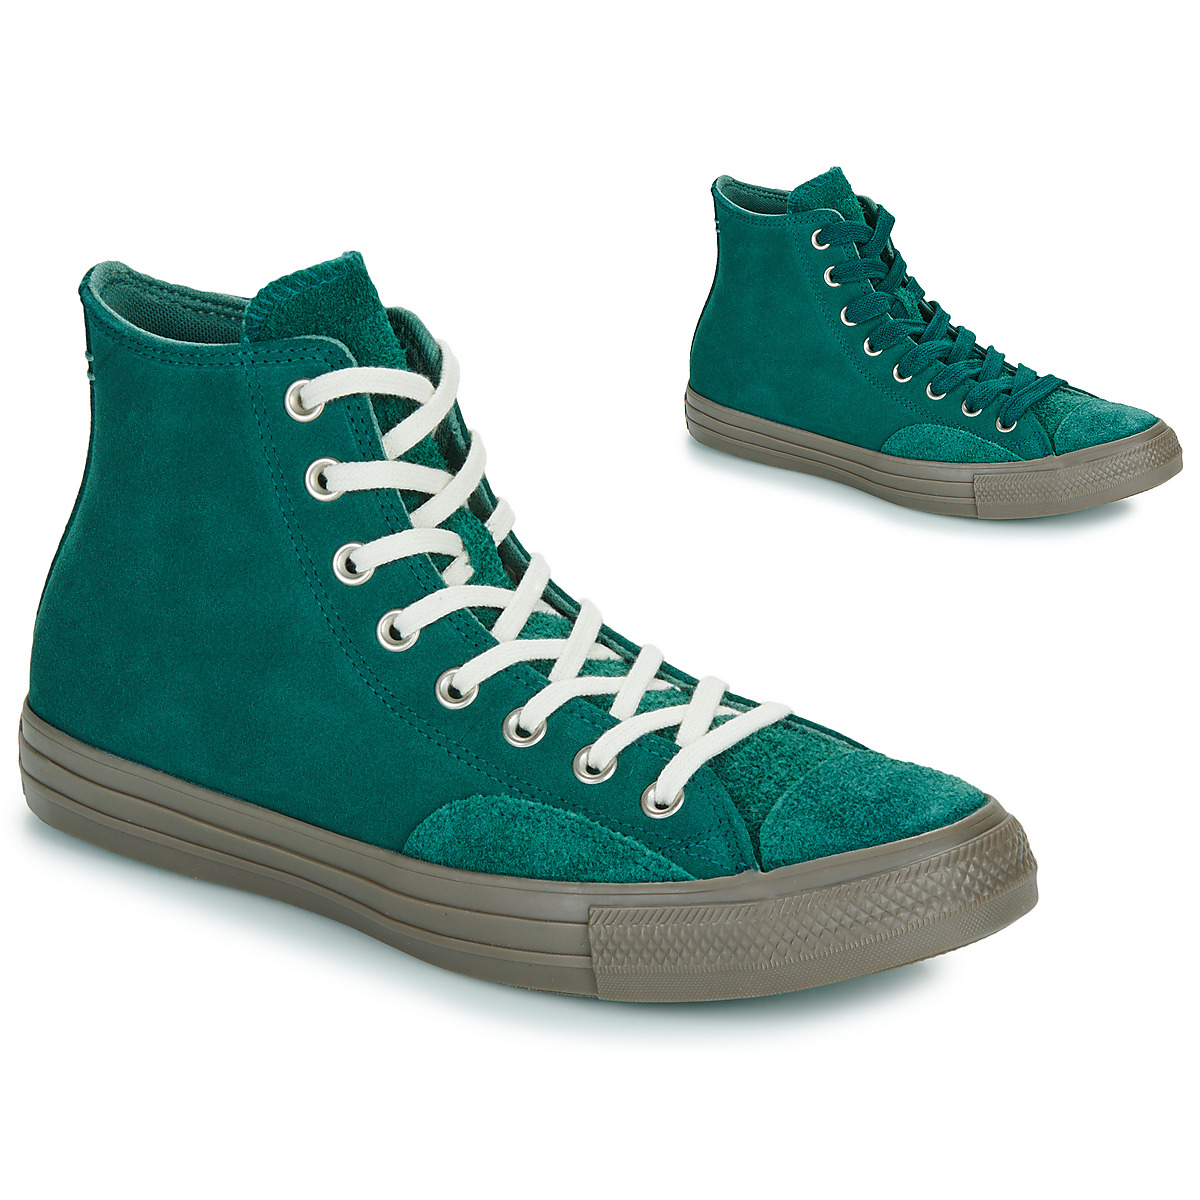 Zapatos Hombre Zapatillas altas Converse CHUCK TAYLOR ALL STAR Verde